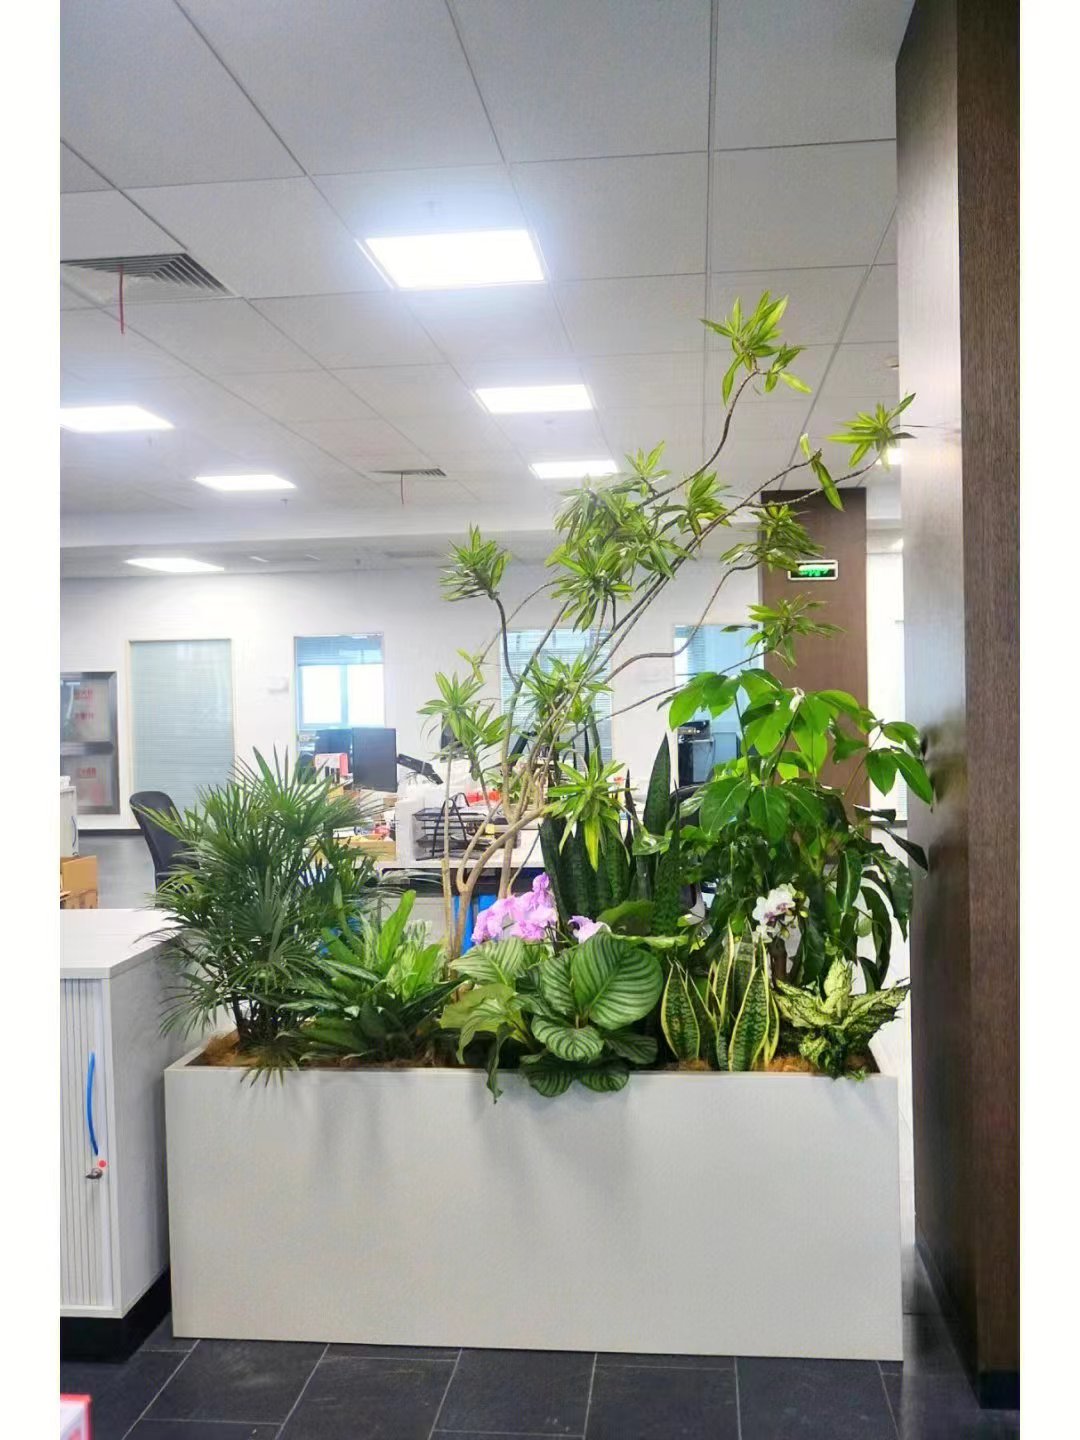 亦莊辦公室綠植花卉組合